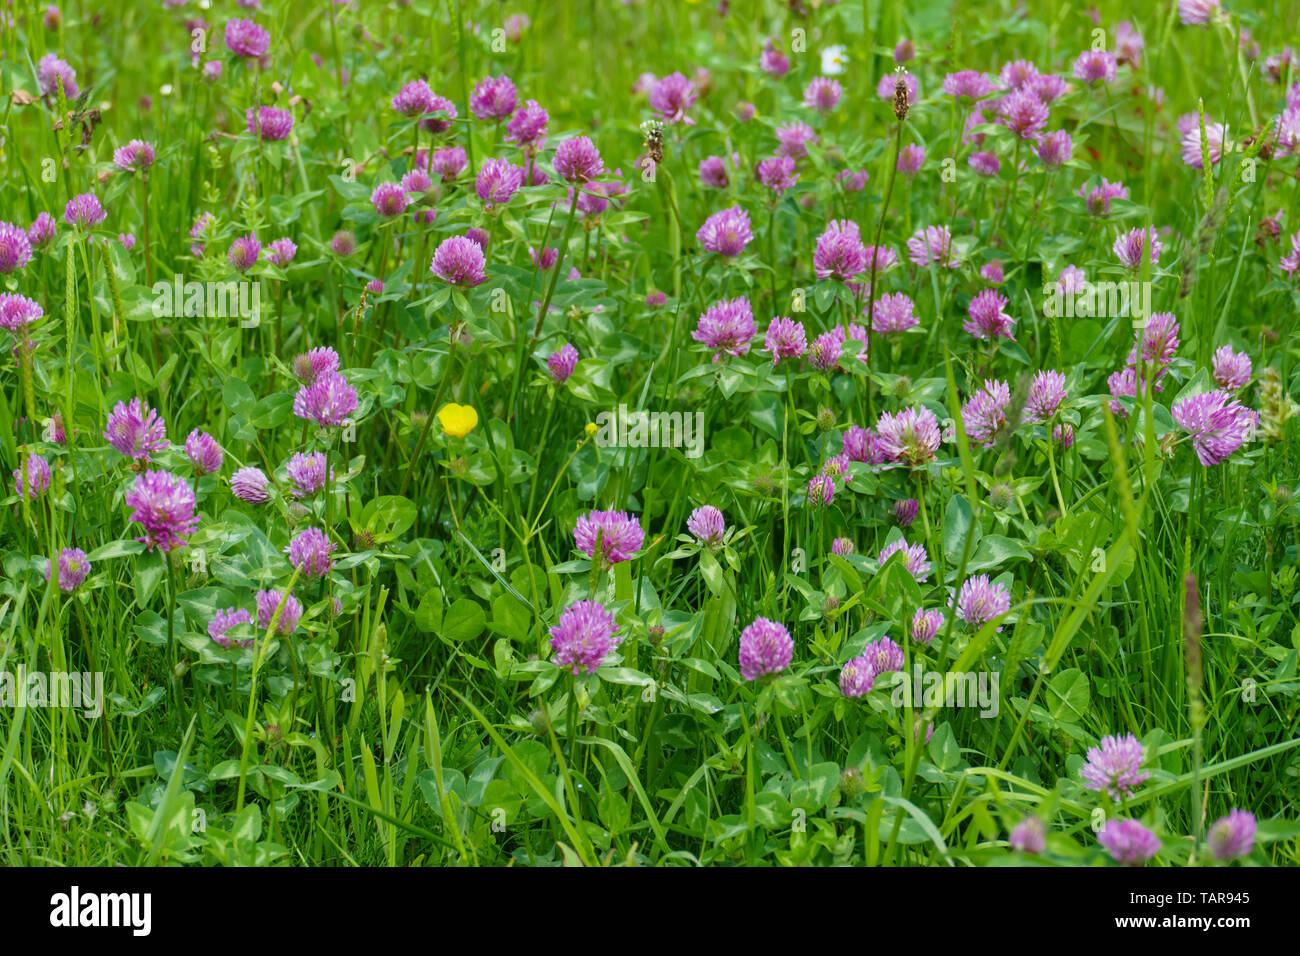 Roter Wiesen Klee Pflanze, mit lila, lila farbener Blüte, und grünen  Blättern, auf der Wiese Stockfotografie - Alamy